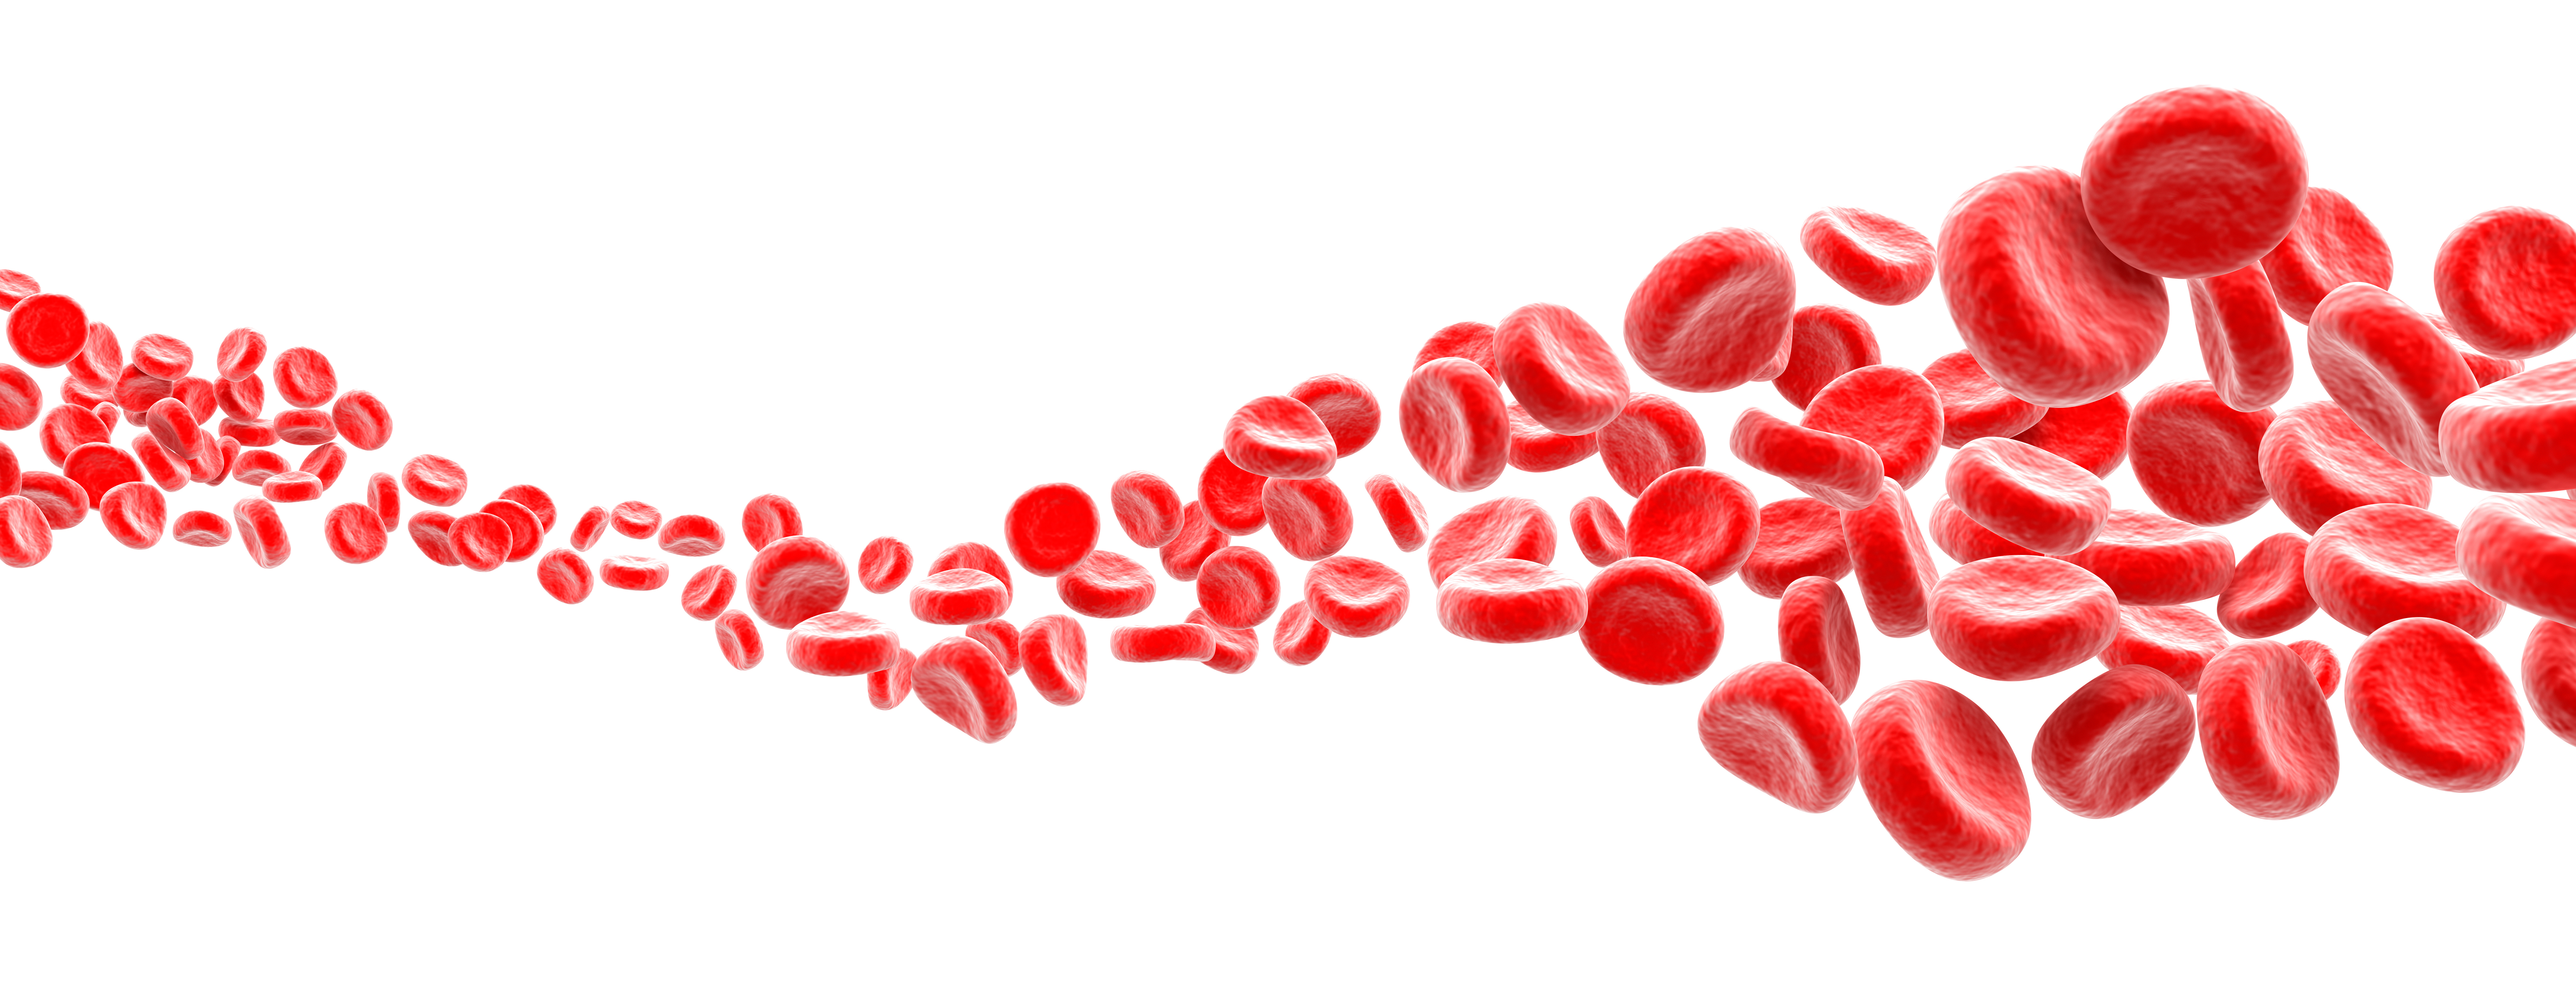 Las plaquetas ayudan a que la sangre se coagule aglutinándose para taponar pequeños agujeros en los vasos sanguíneos dañados